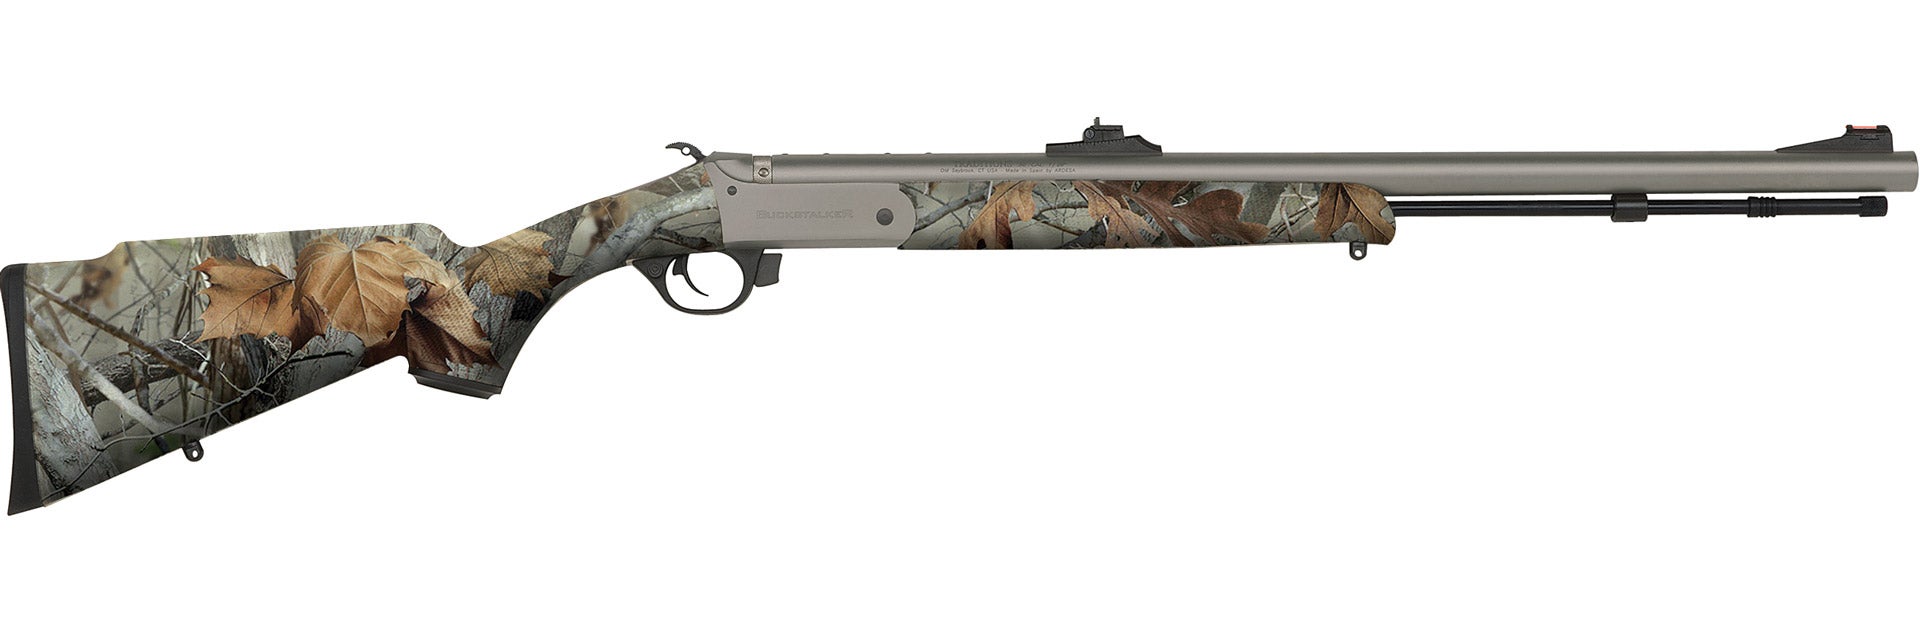 Traditions Buckstalker™ XT Rifle - .50 Caliber G2 Vista Camo & Fiber Optic Sights - R72110847S